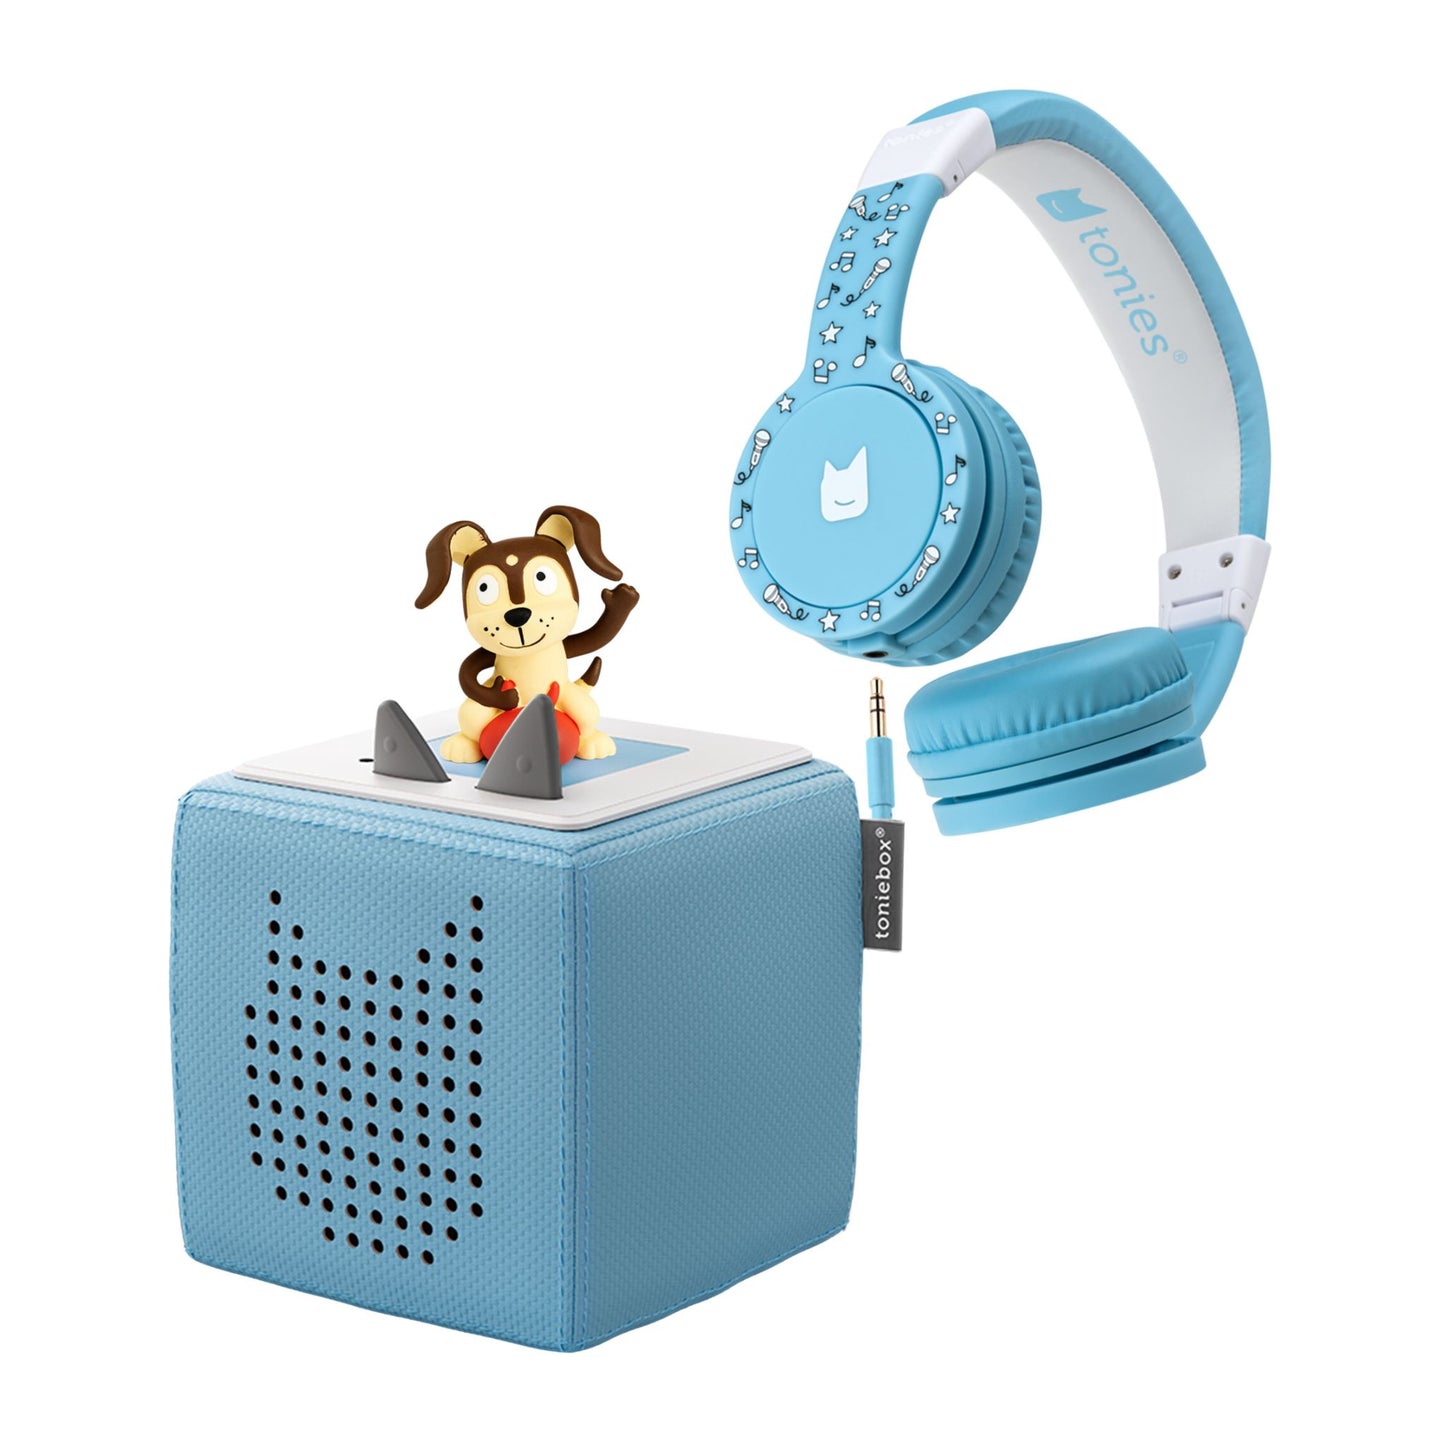 Toniebox Starter Set with Headphones